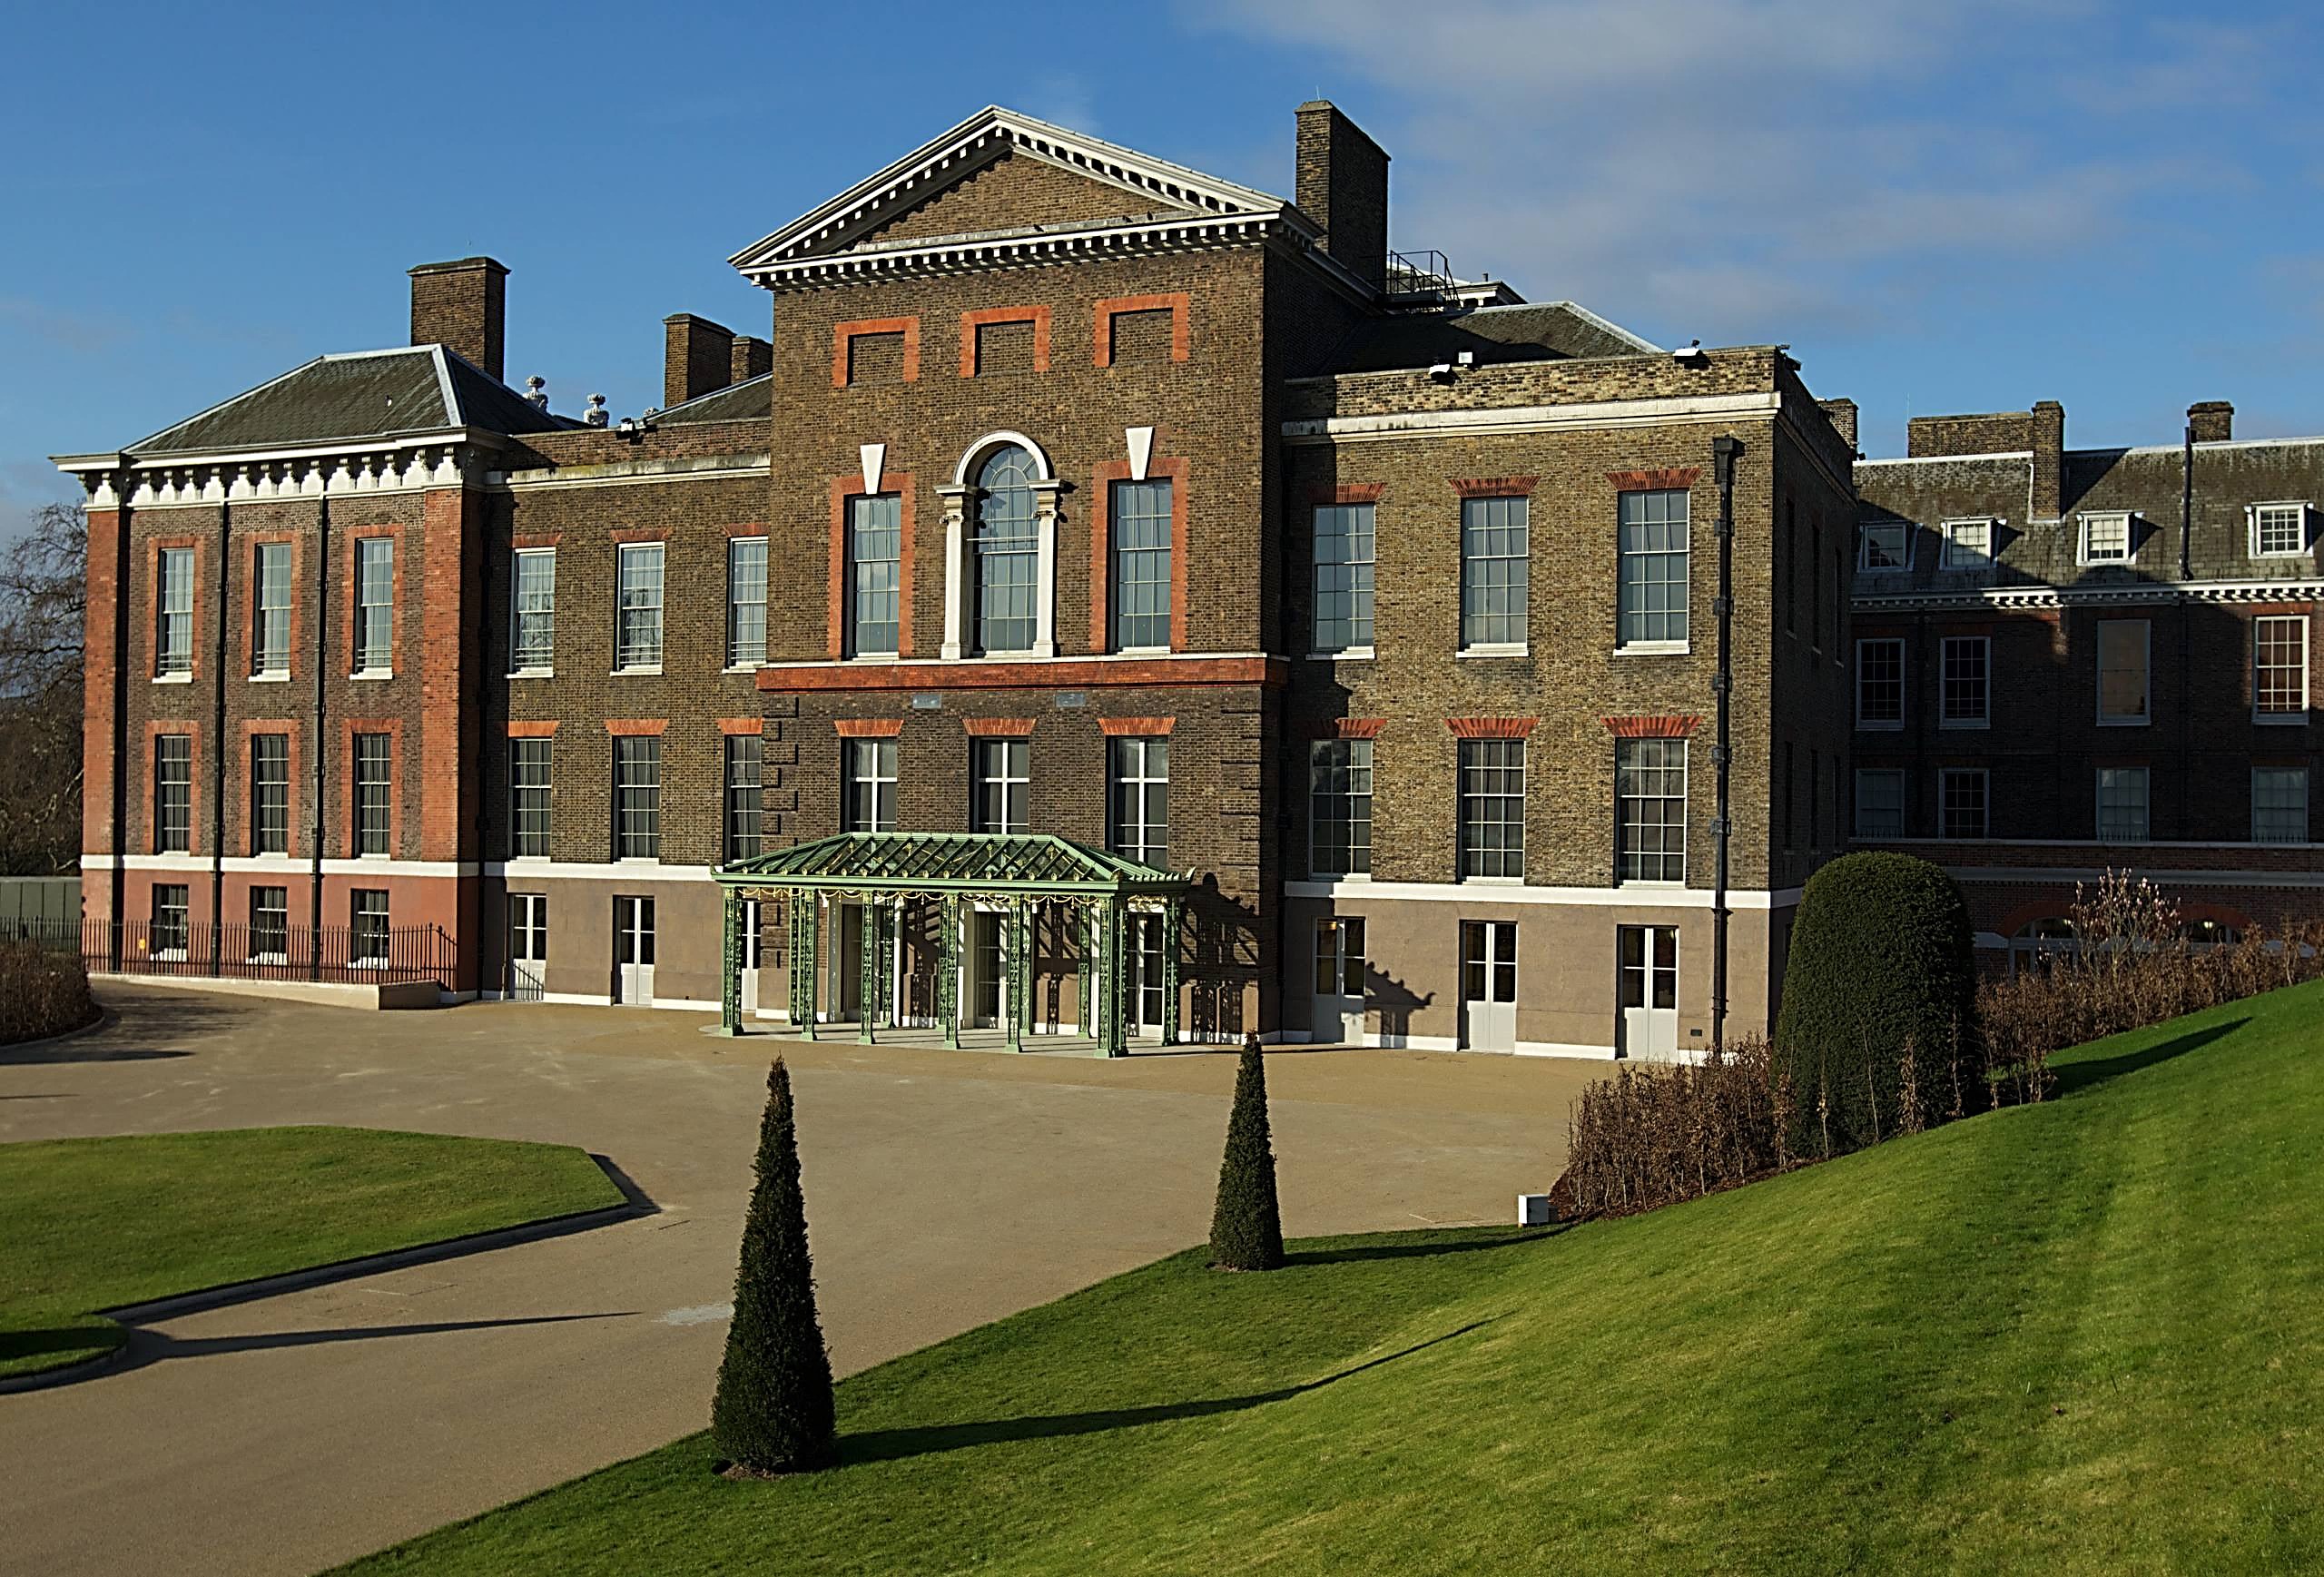 Example 003 - Kensington Palace